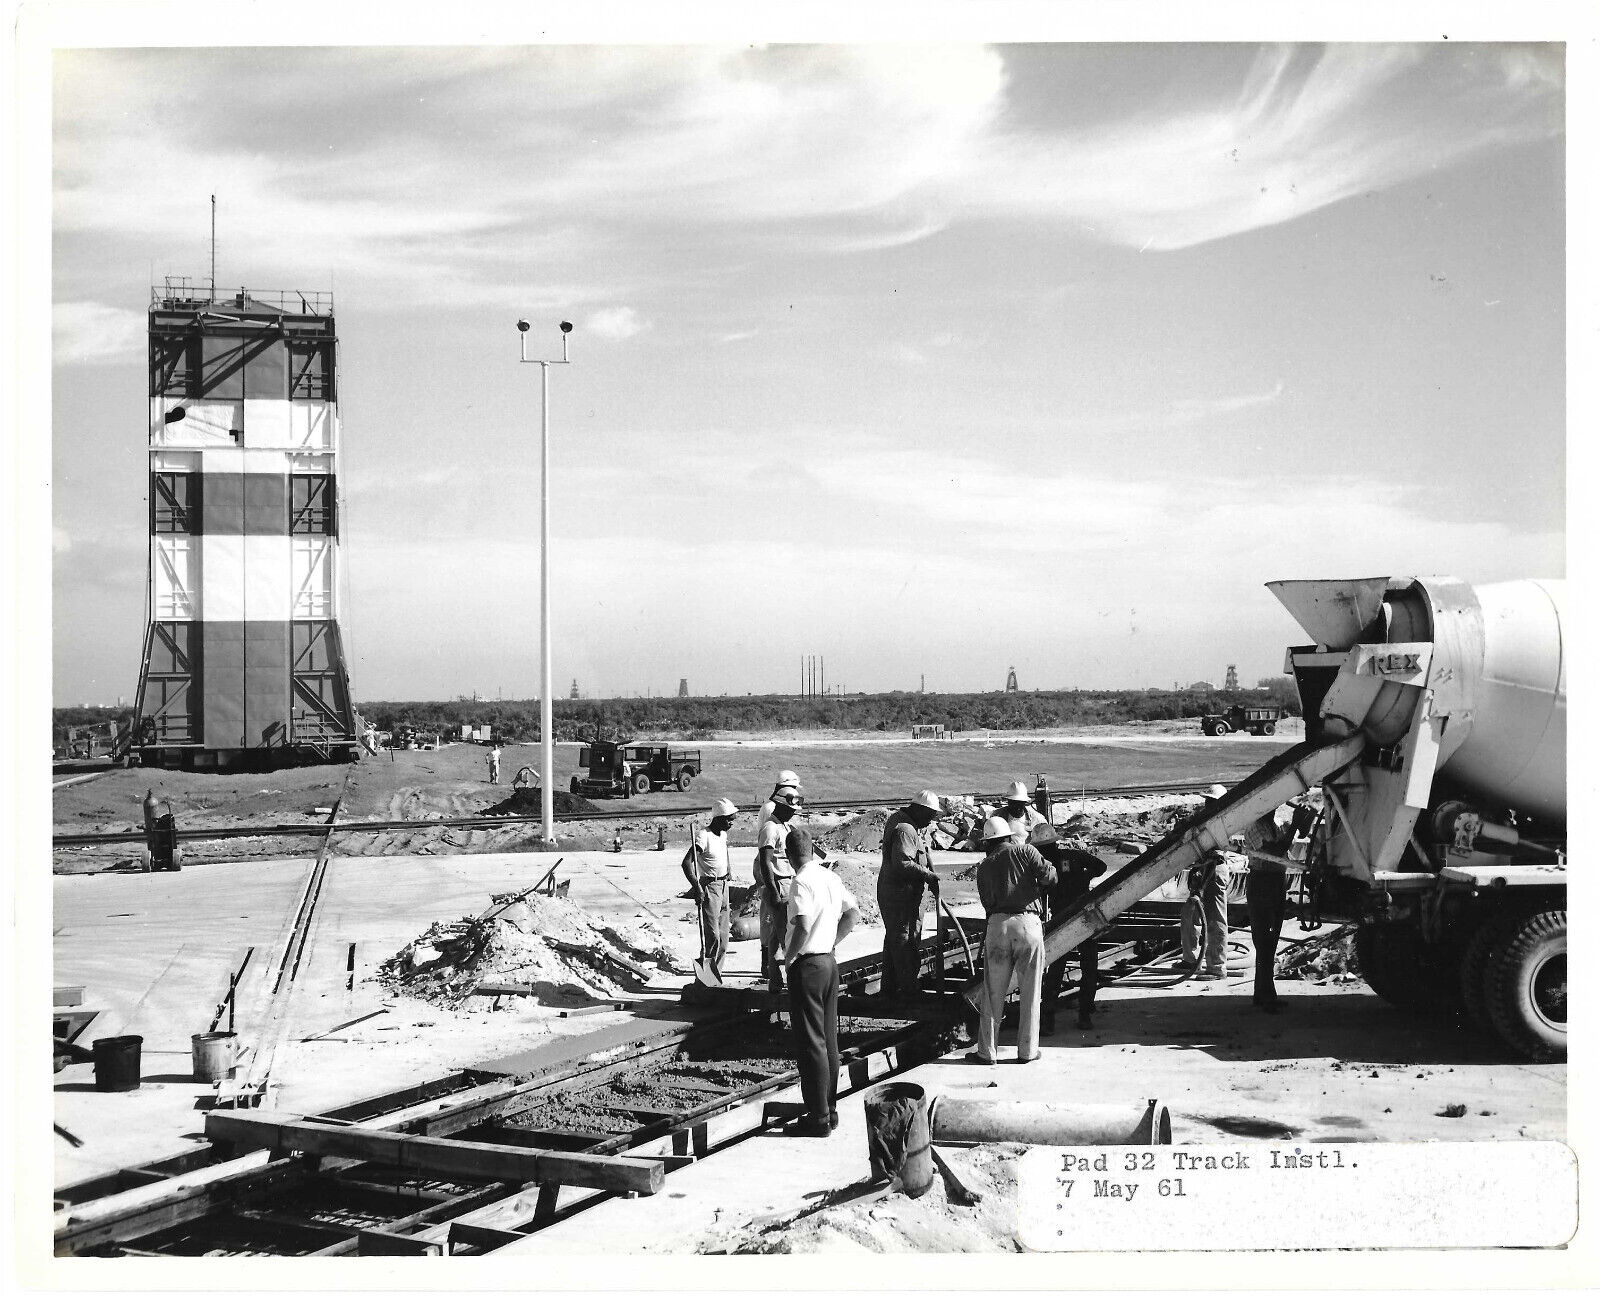 43 Mercury Era launch Site and Blockhouse Photos 1960 - 1970